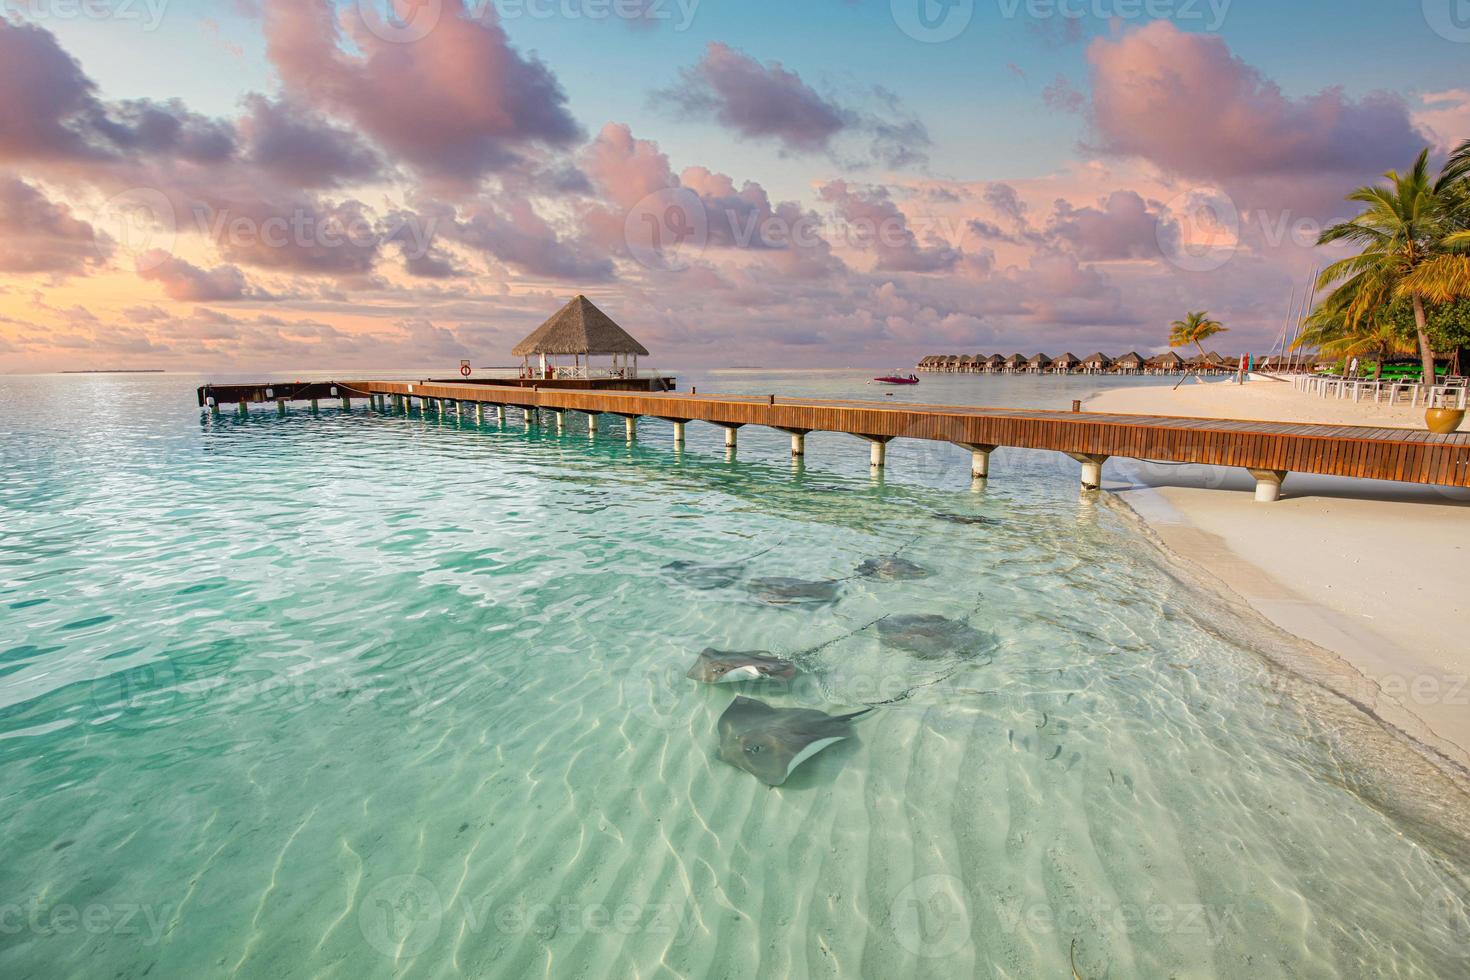 fantástica costa da praia do pôr do sol, águas rasas com arraias e tubarões nas ilhas maldivas. hotel resort de luxo, cais de madeira, villa sobre a água, bangalô. viagem incrível, vida selvagem de paisagem de férias foto